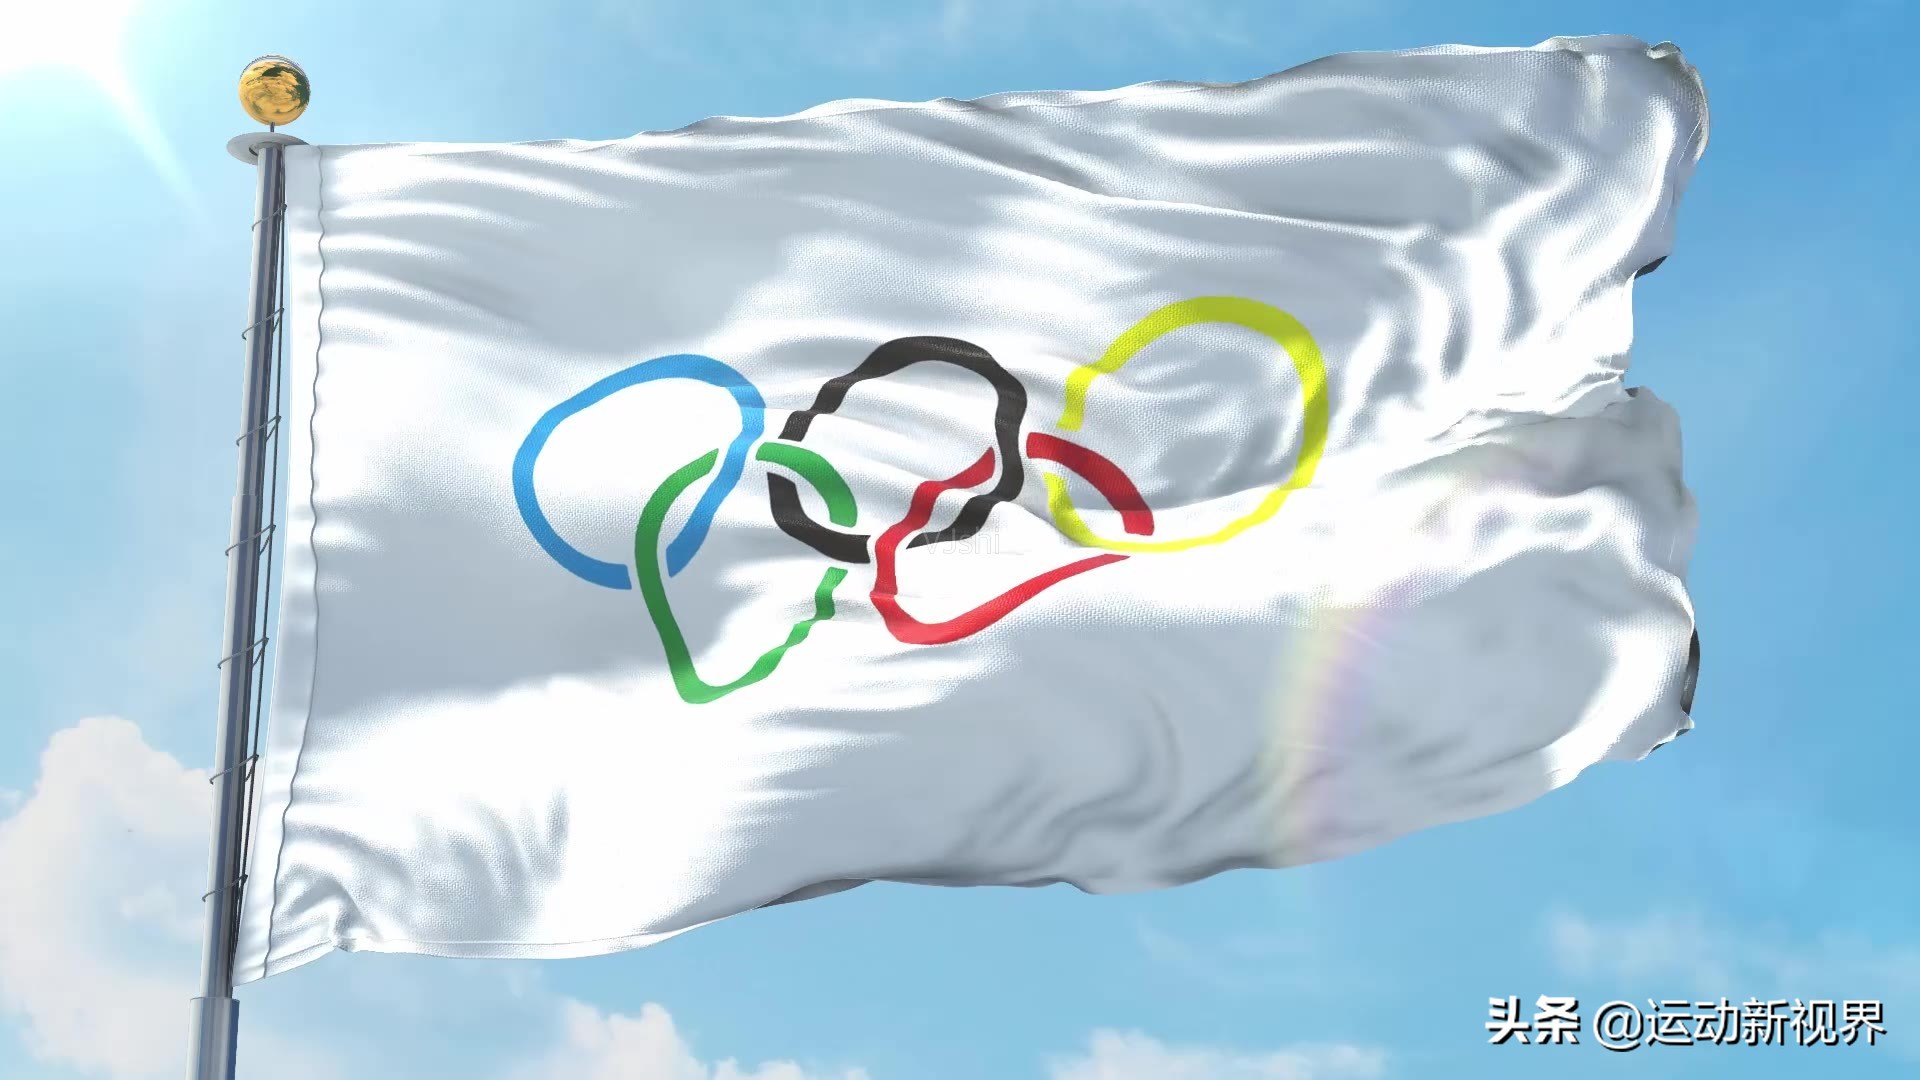 奥运五环的颜色是哪几种颜色（奥运会是五色环旗，其中黄色代表了什么含义？是指的亚洲吗？）